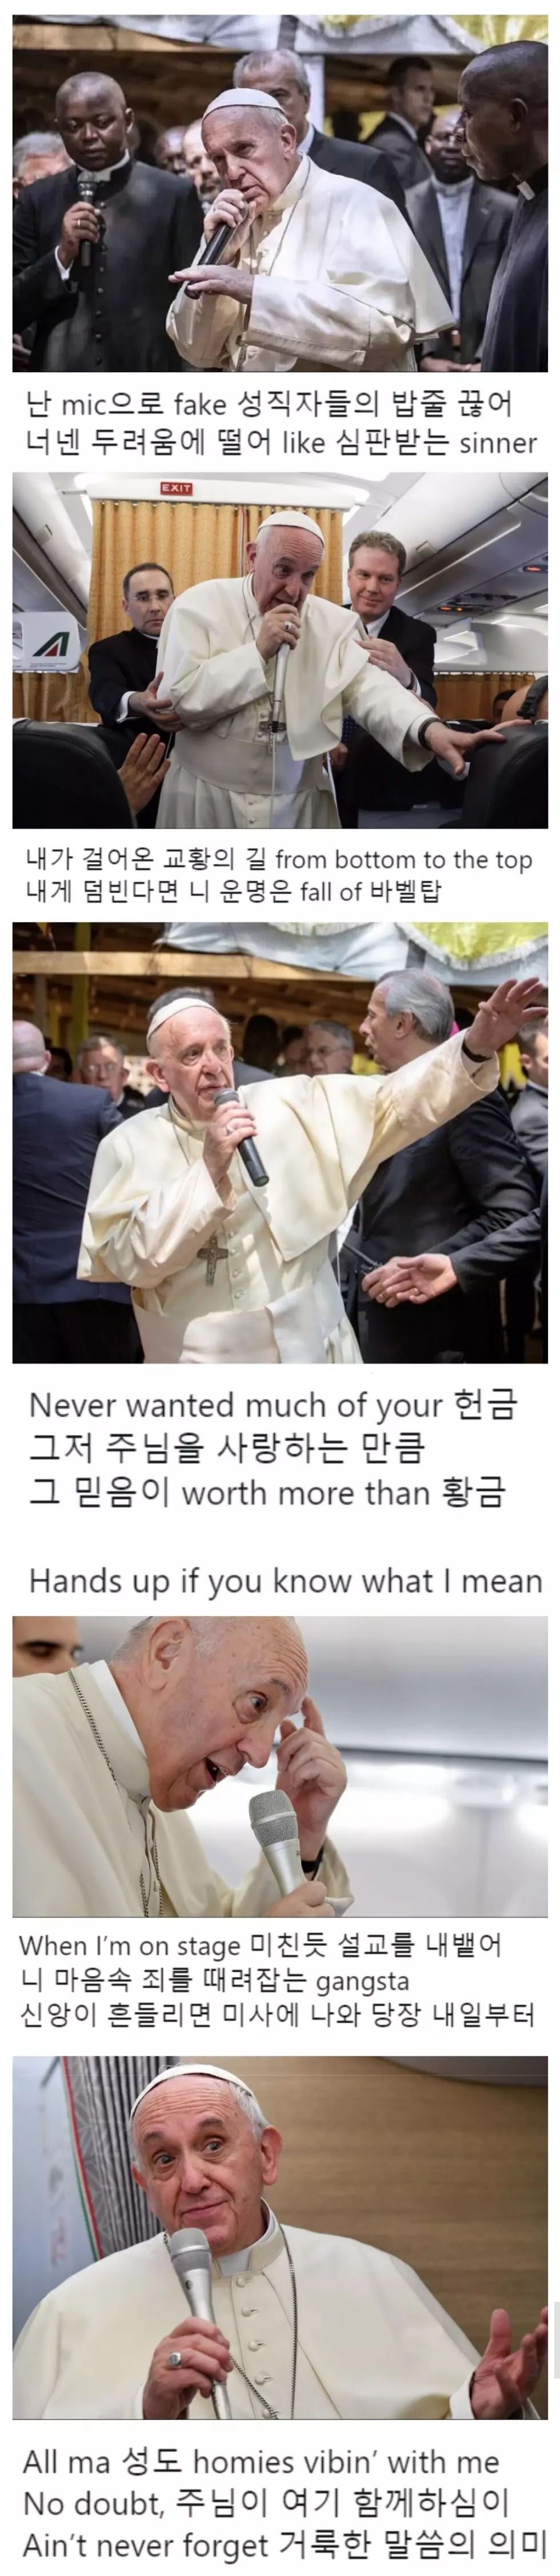 젠장 교황이 개쩌는 설교를 하려고 하고 있어